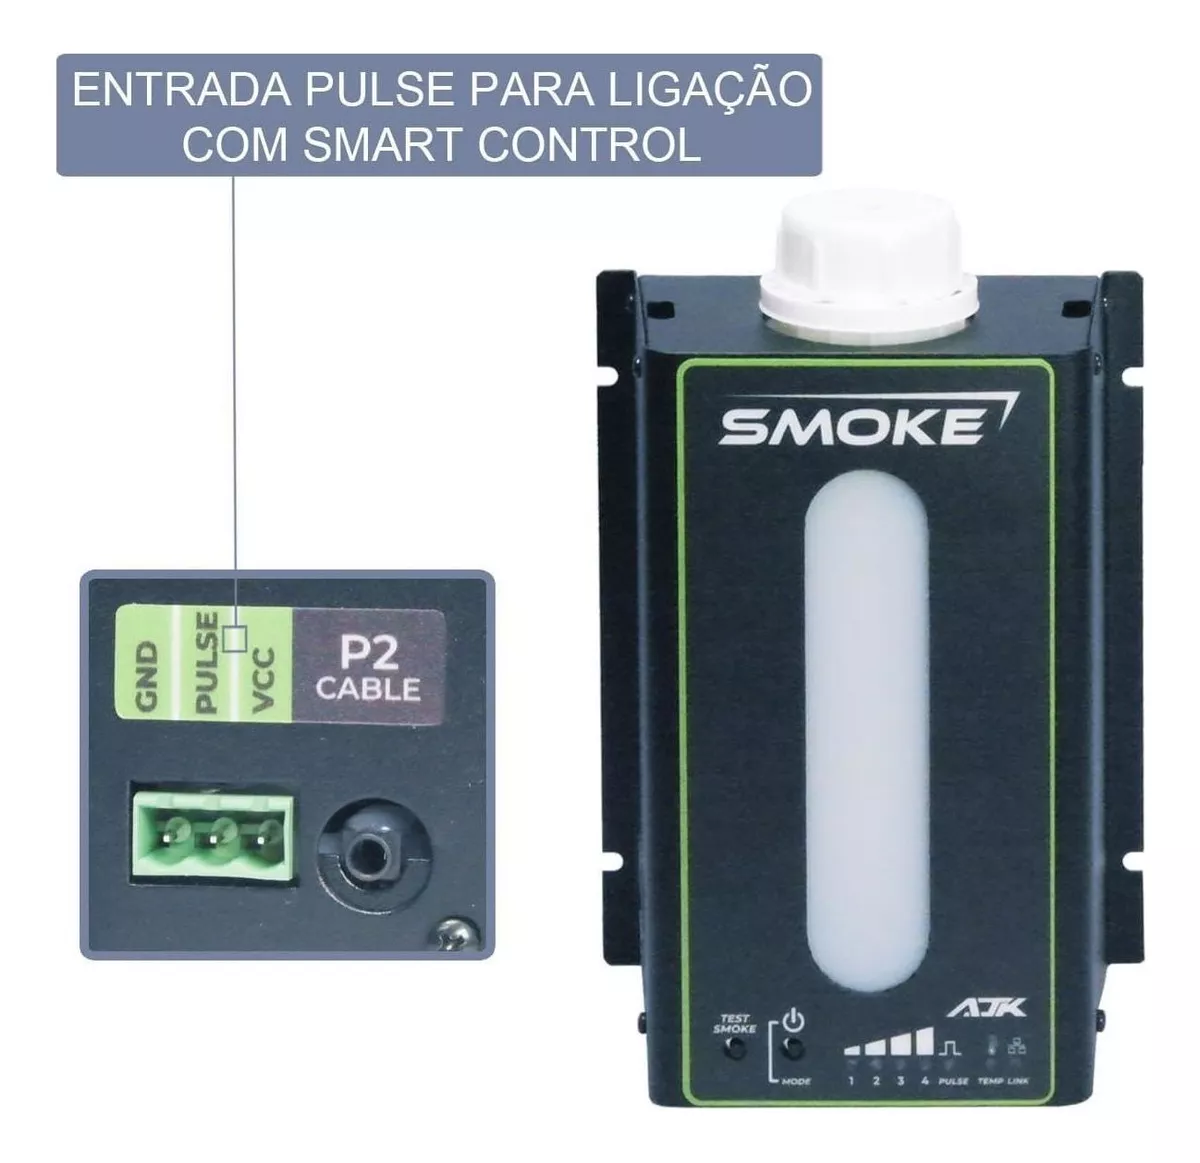 Primeira imagem para pesquisa de maquina de fumaca fog machine 1500w